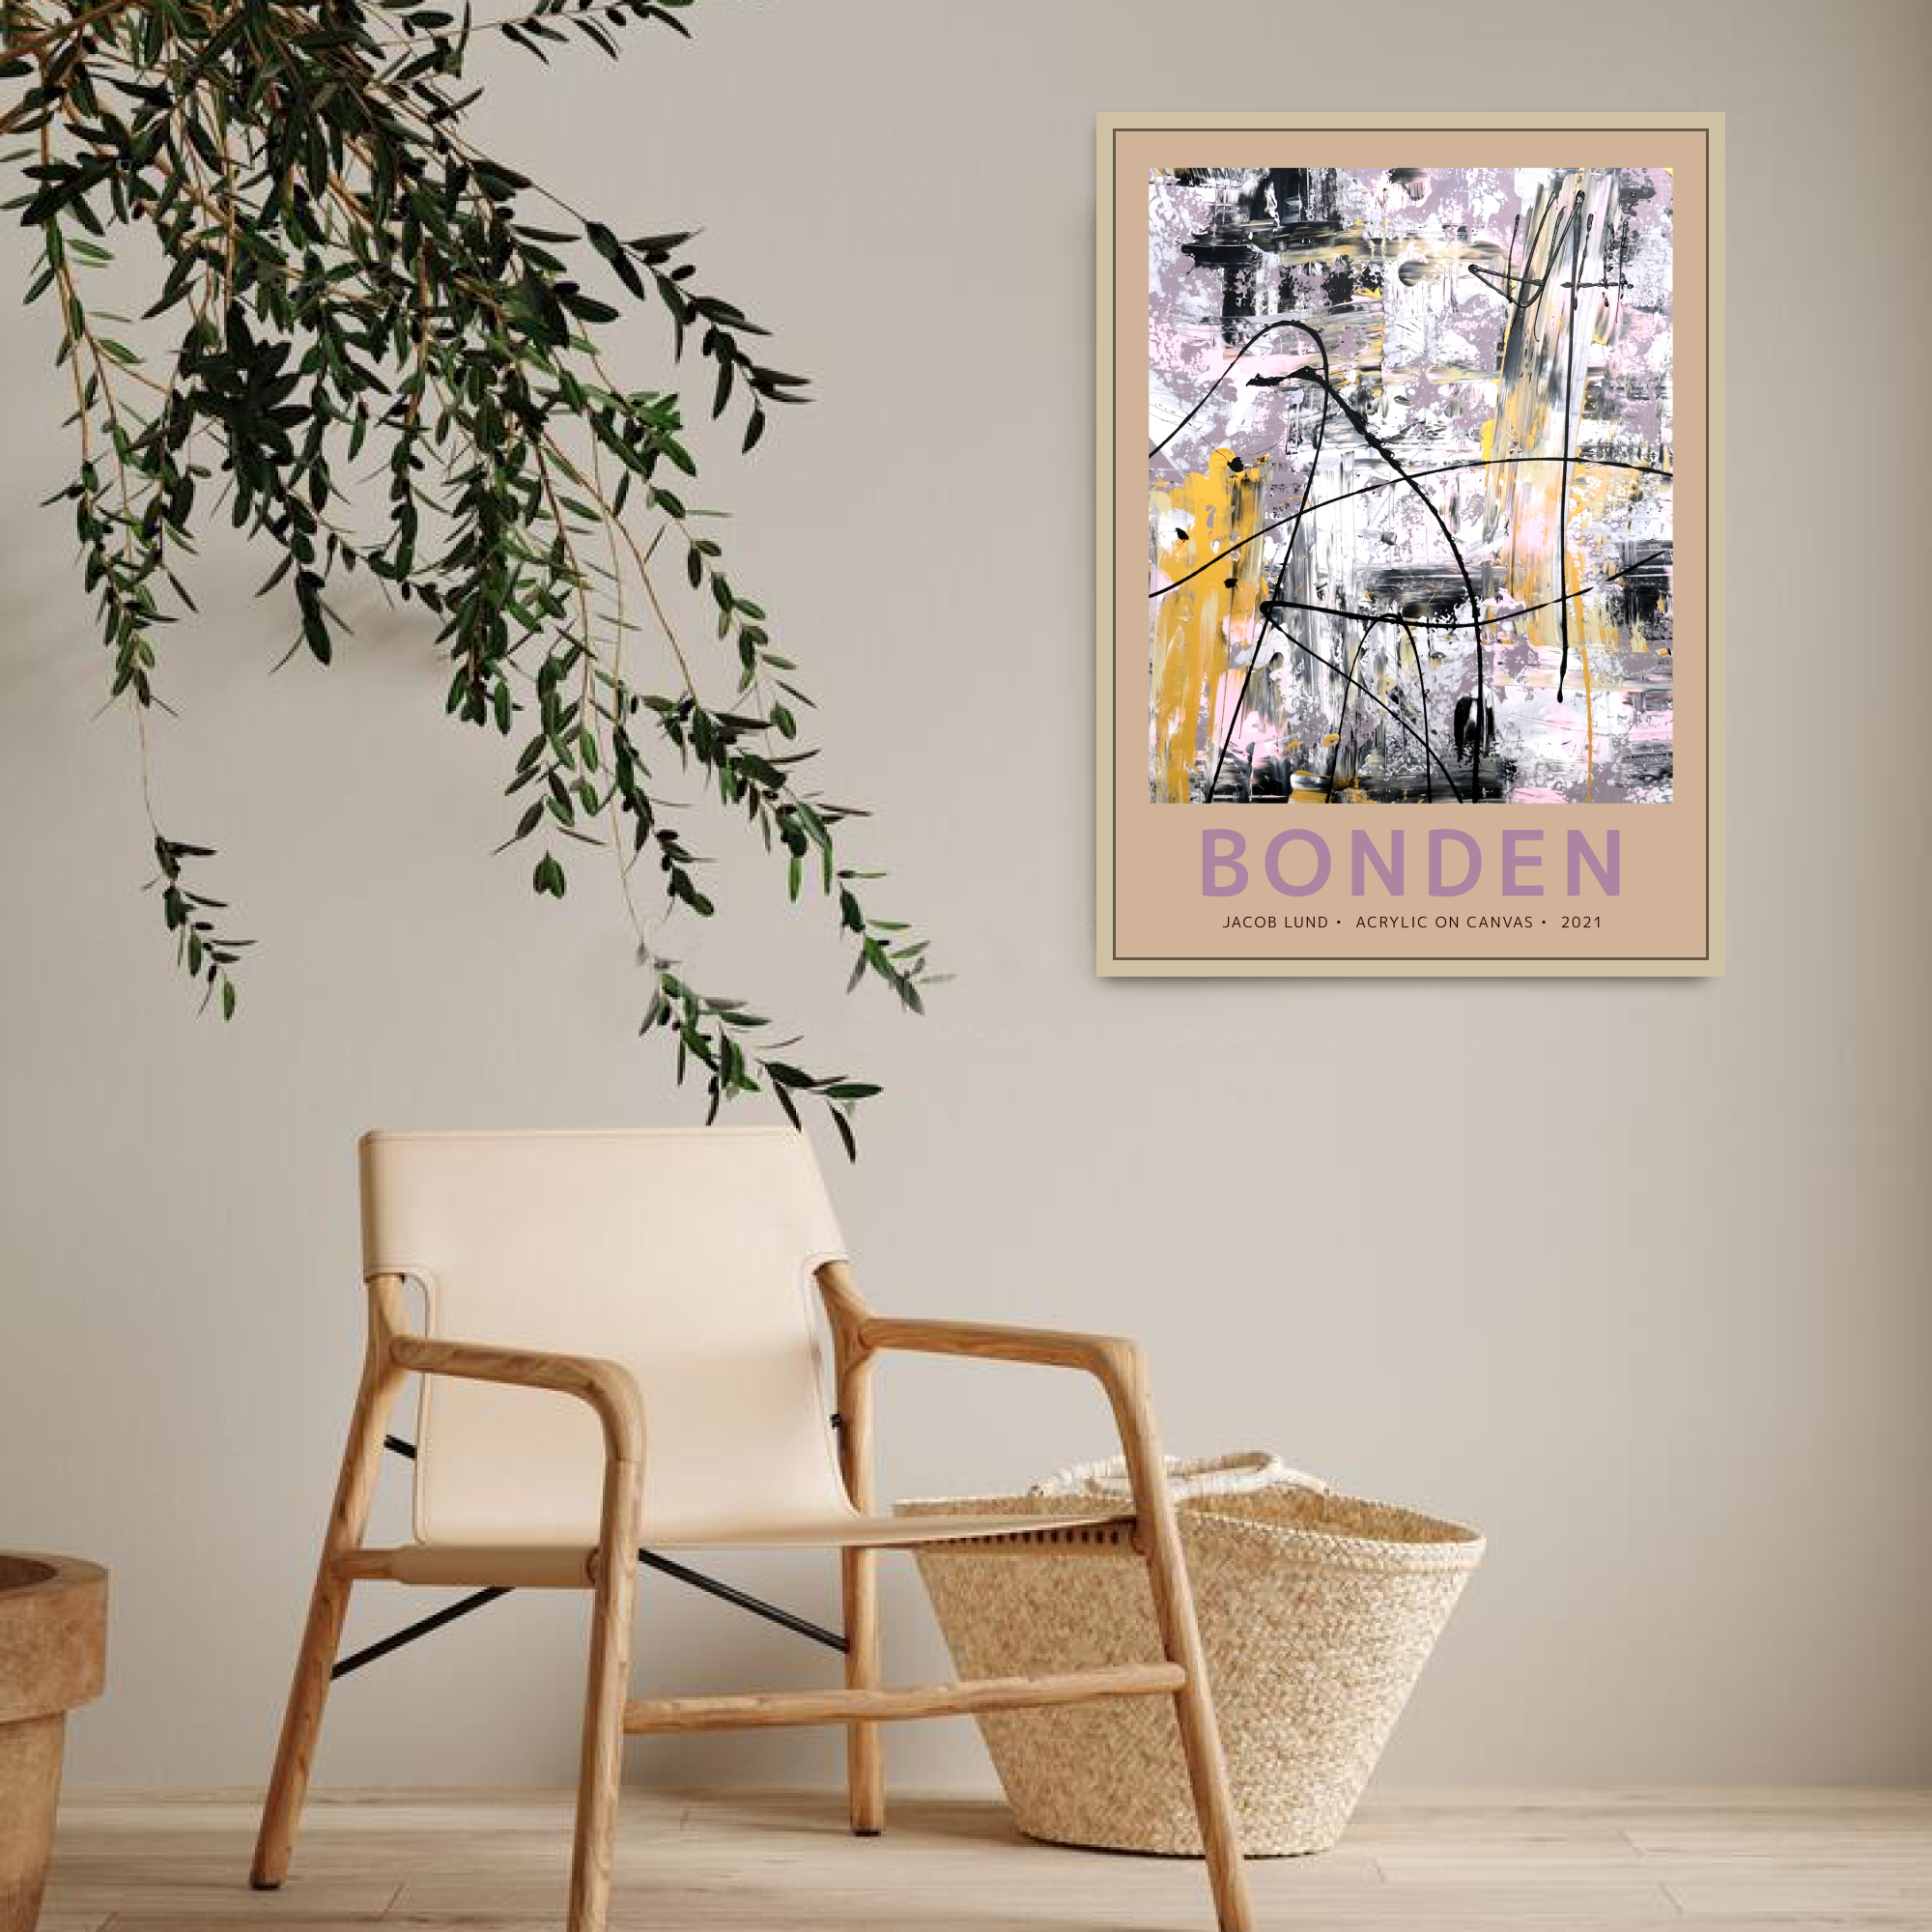 Plakat: "Bonden"